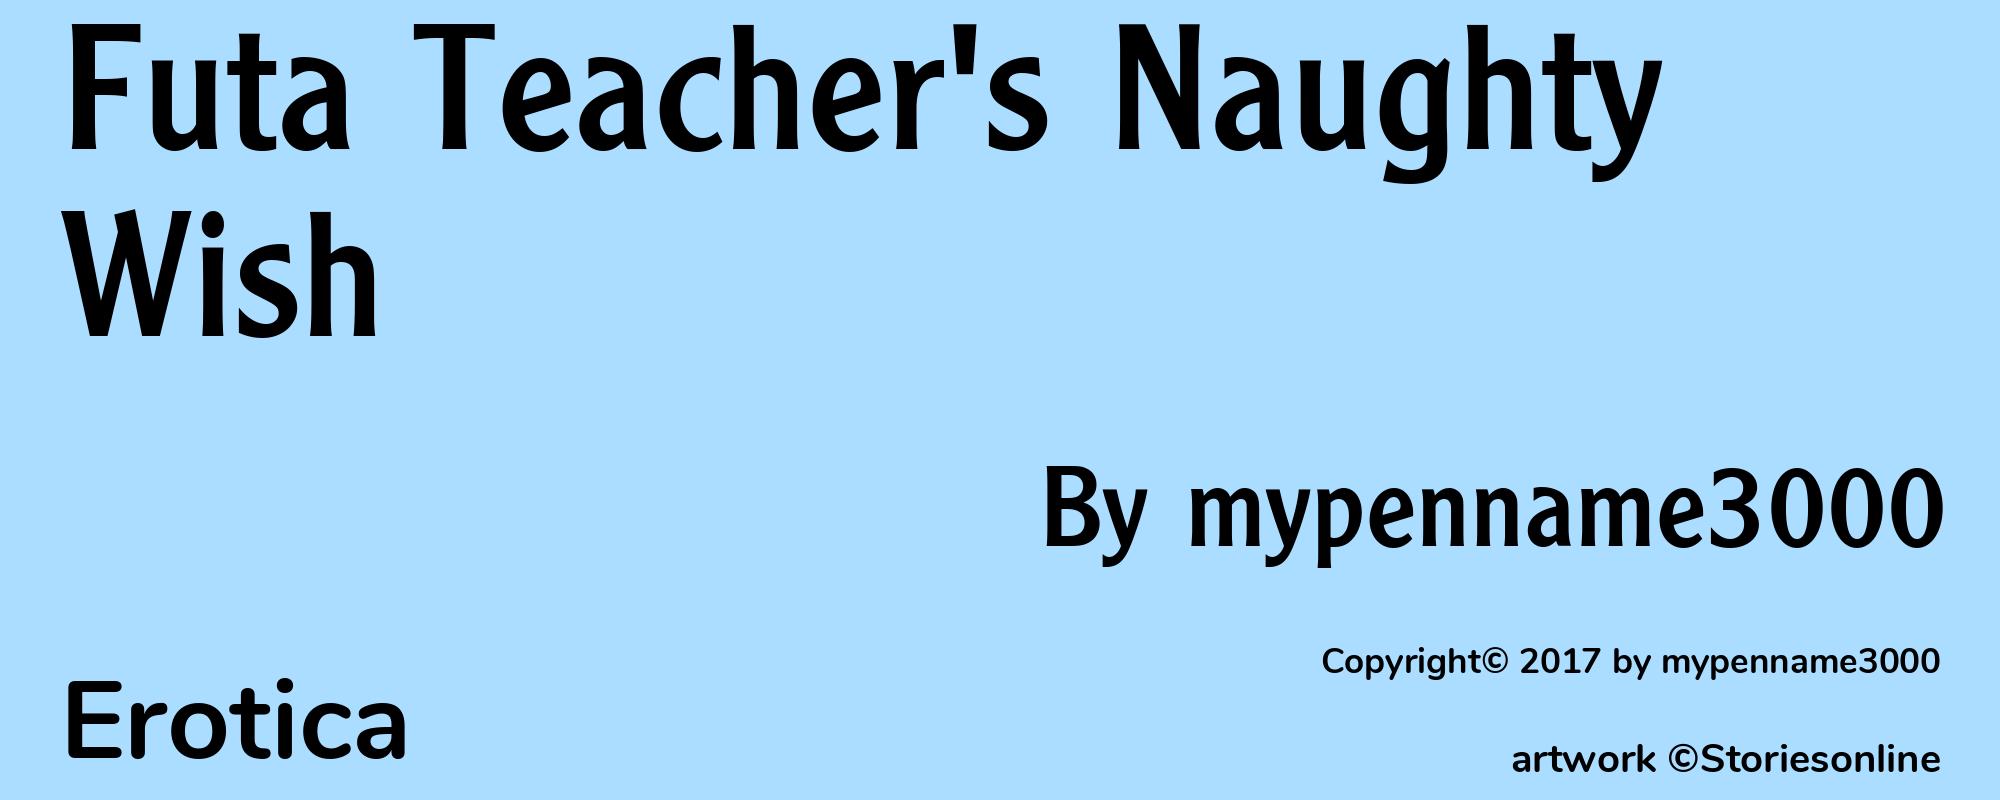 Futa Teacher's Naughty Wish - Cover